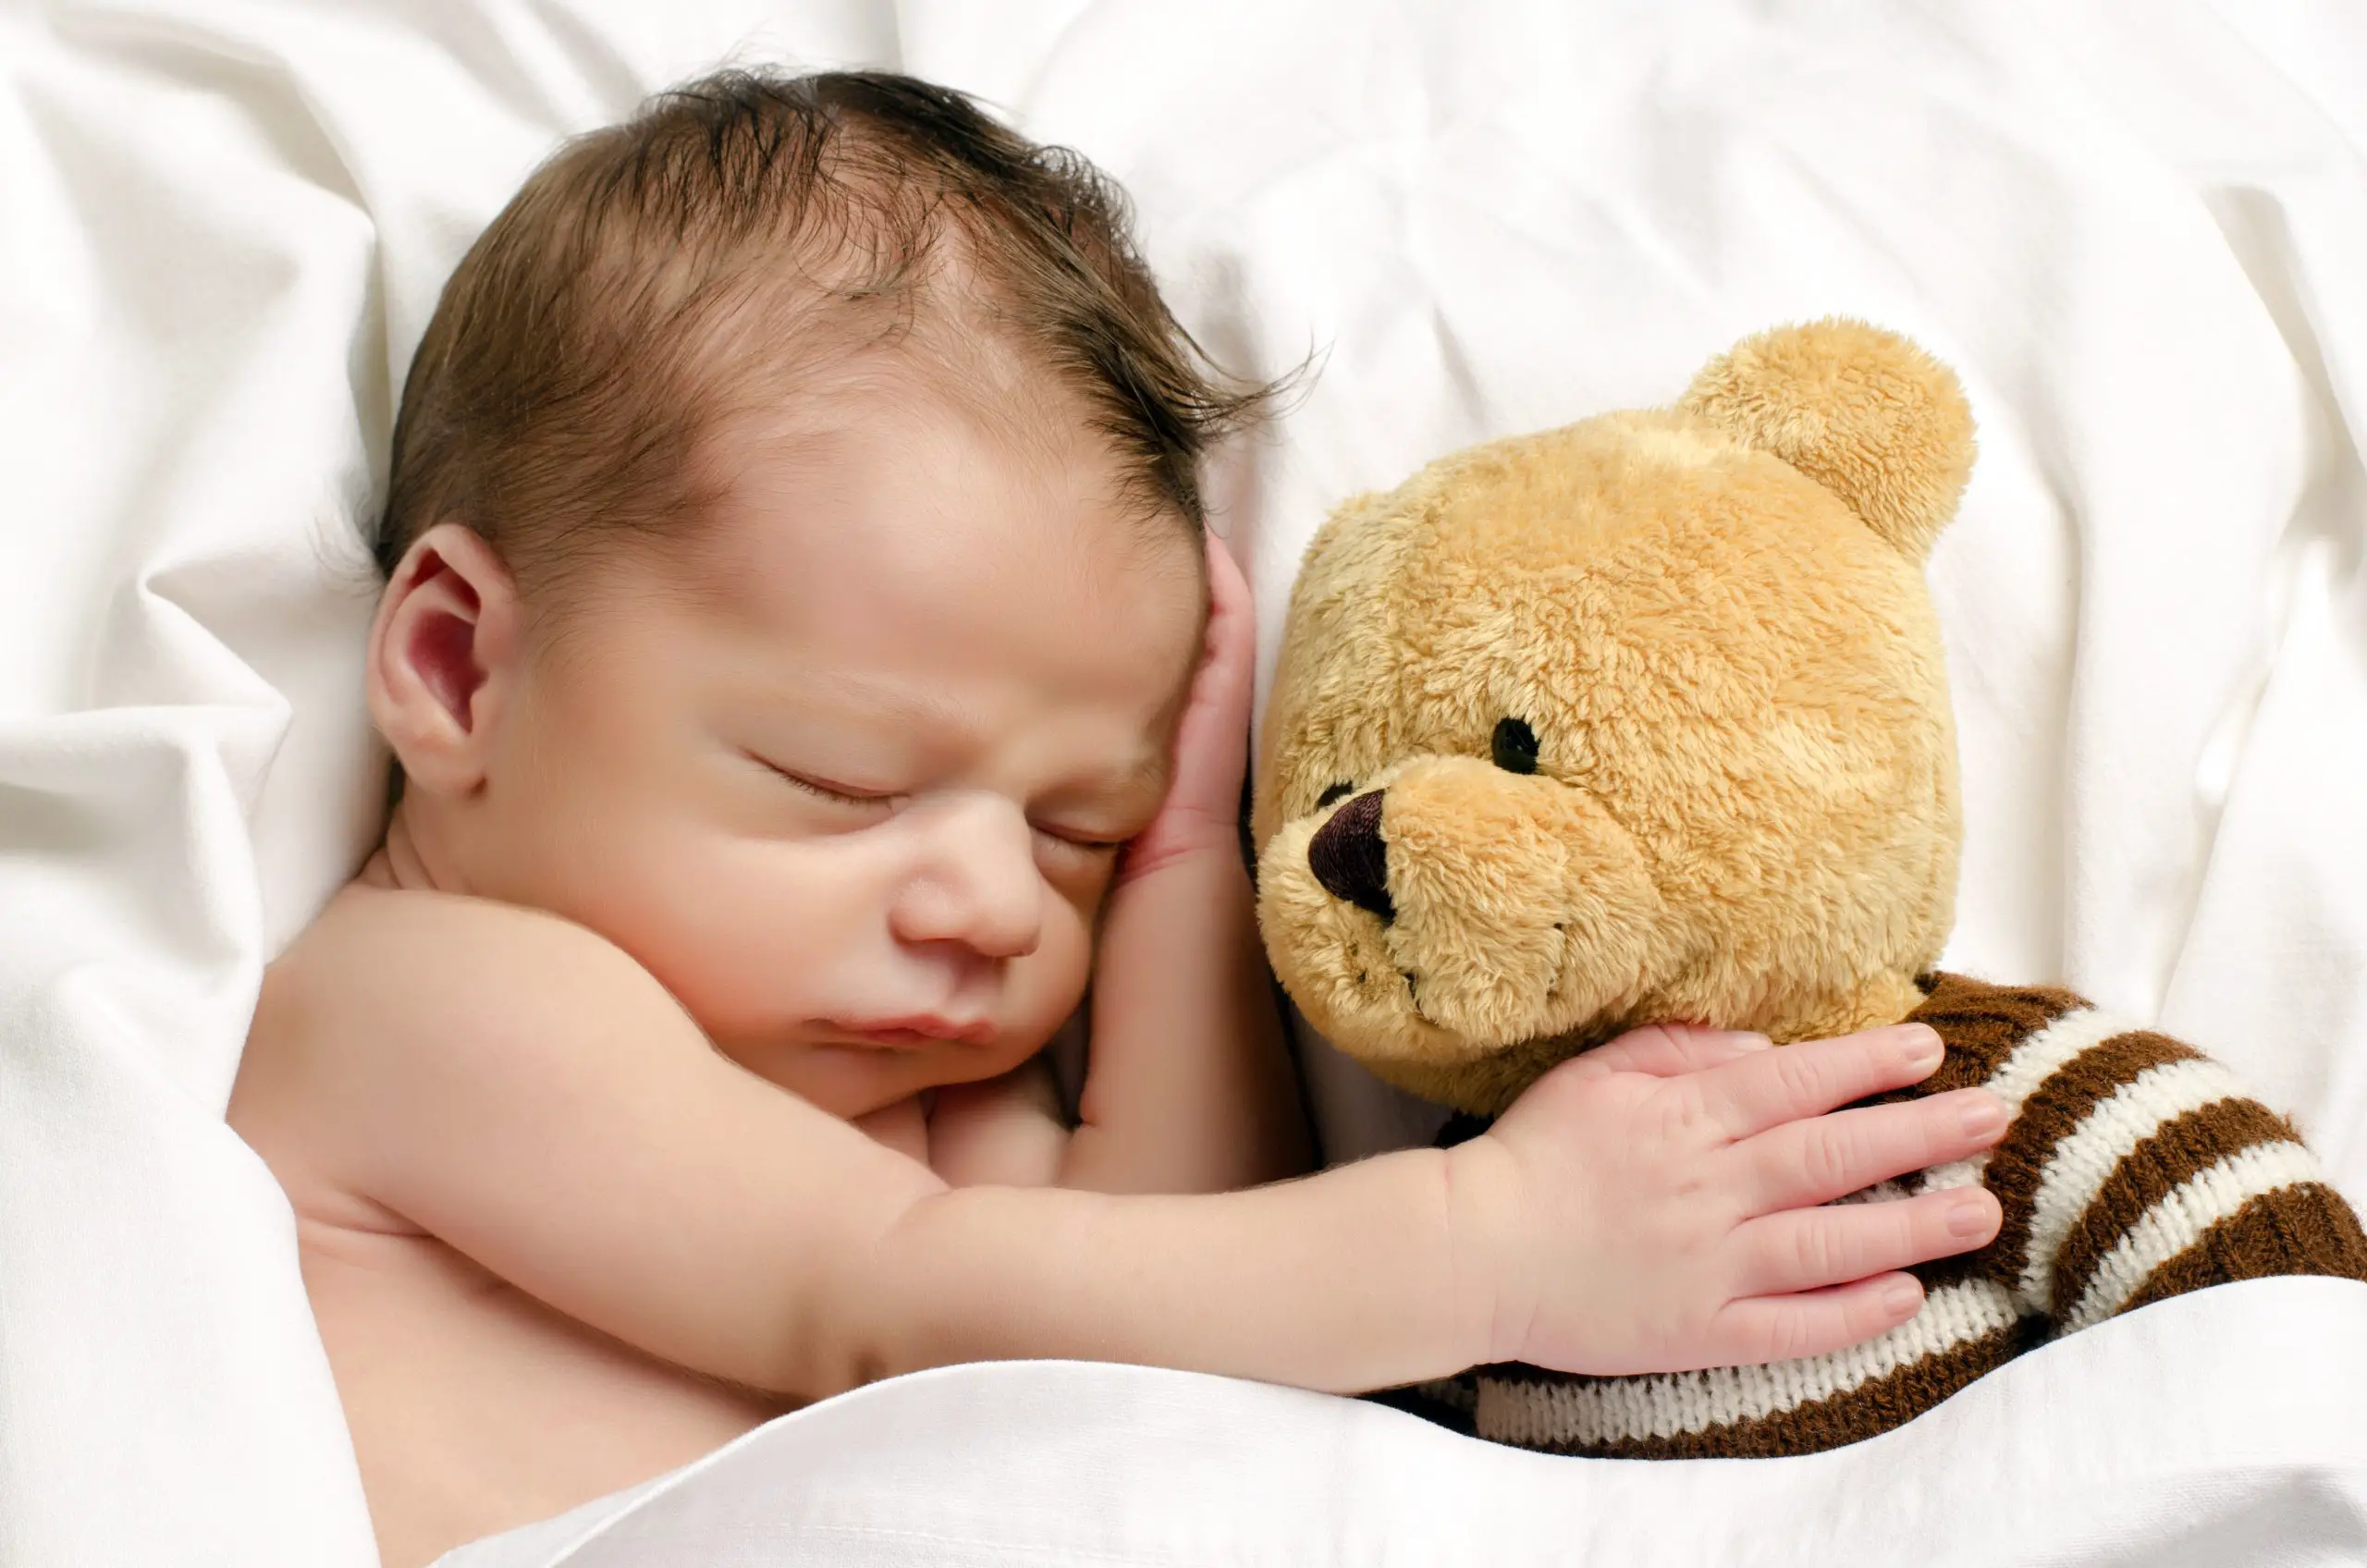 Sleeping baby hugging a teddy